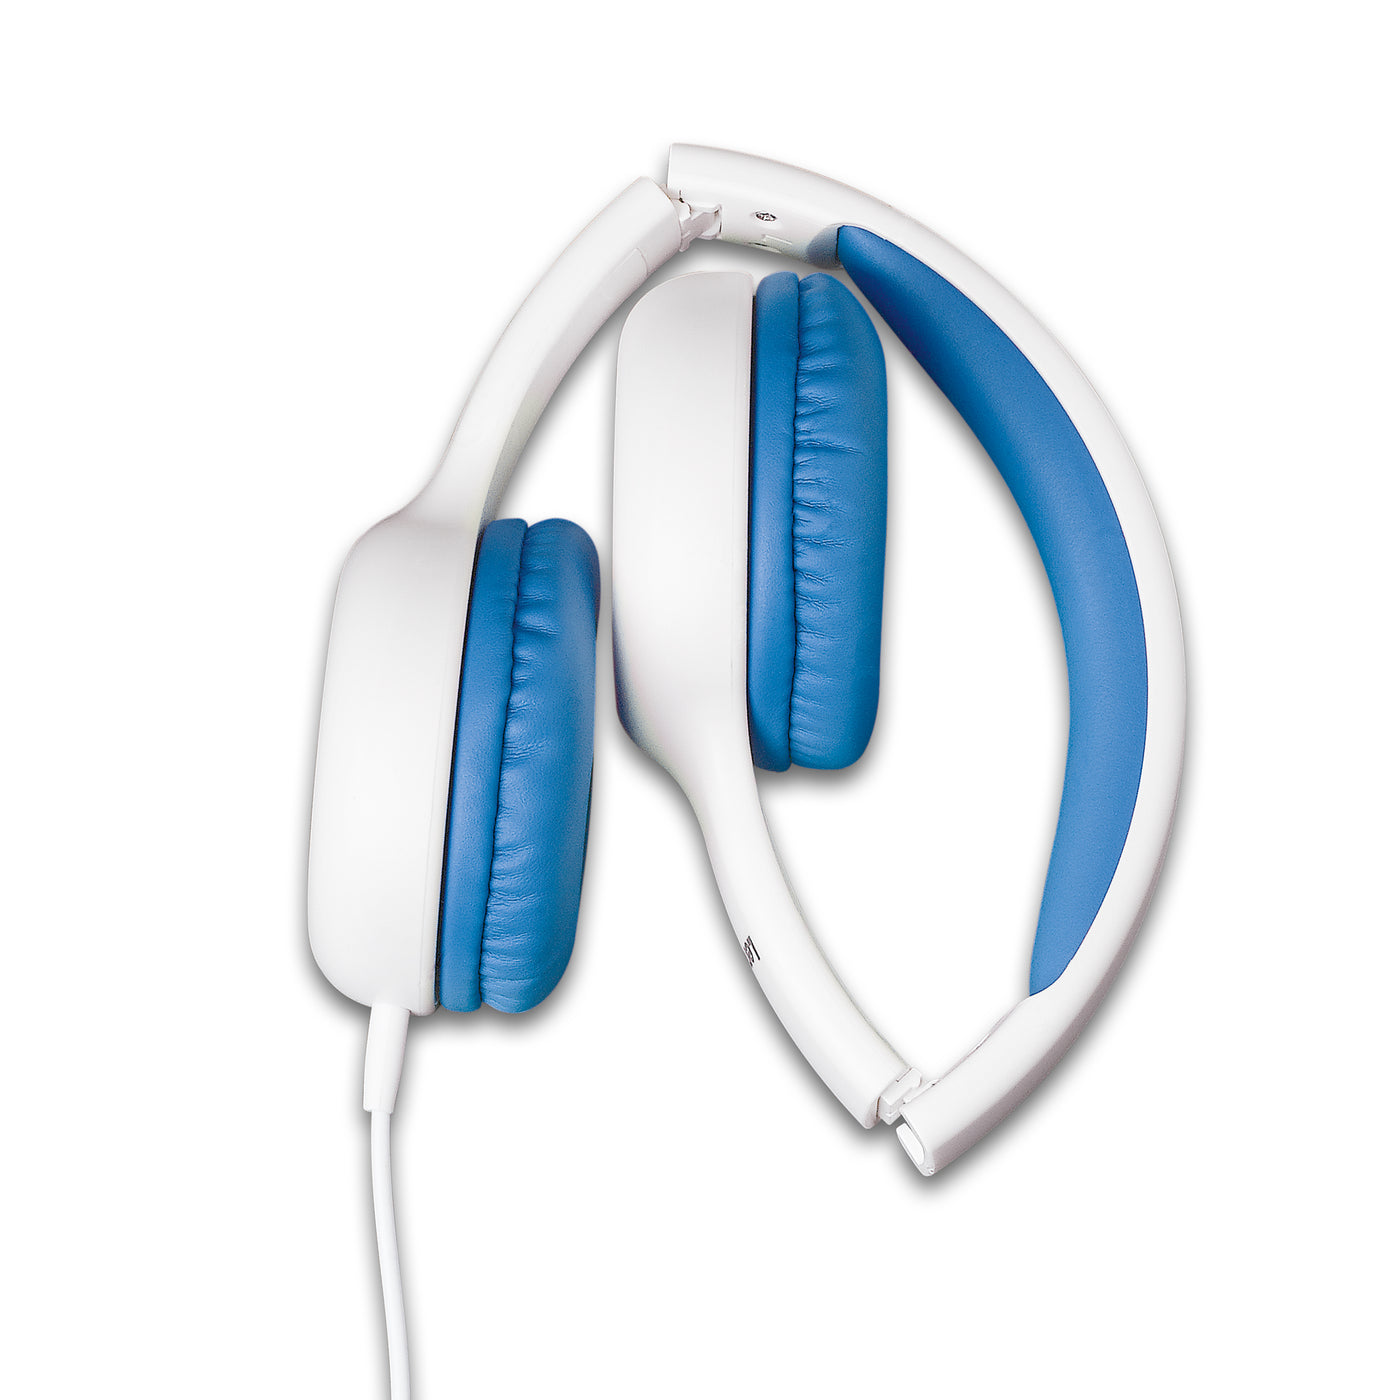 LENCO HP-010BU - Hoofdtelefoon voor kinderen, blauw